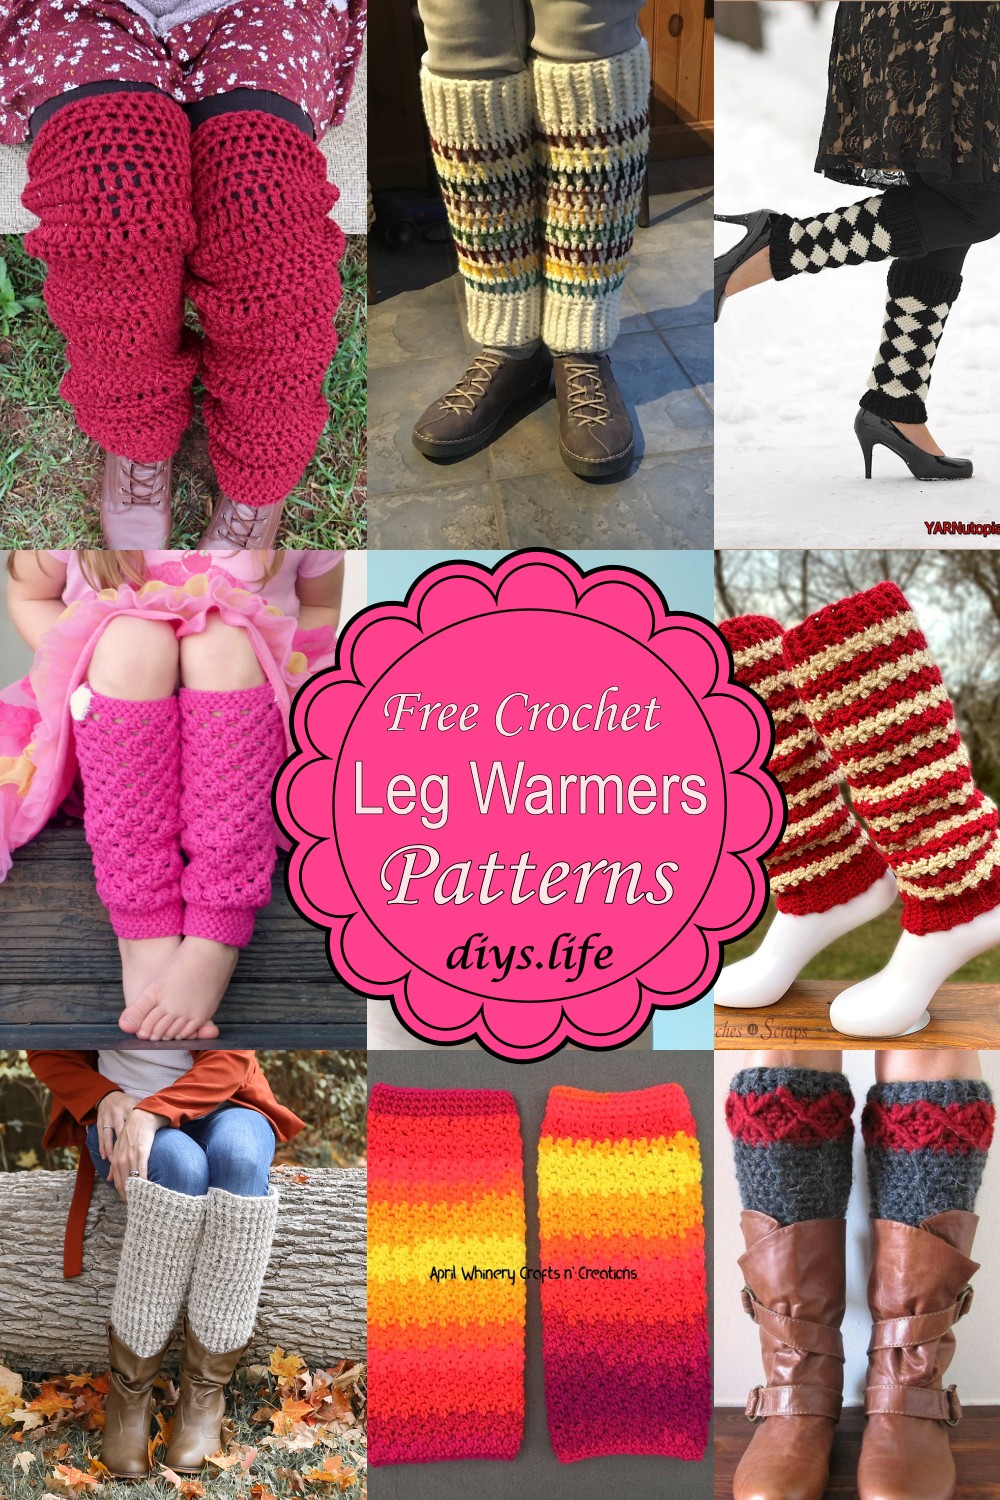 Free Crochet Leg Warmers Patterns